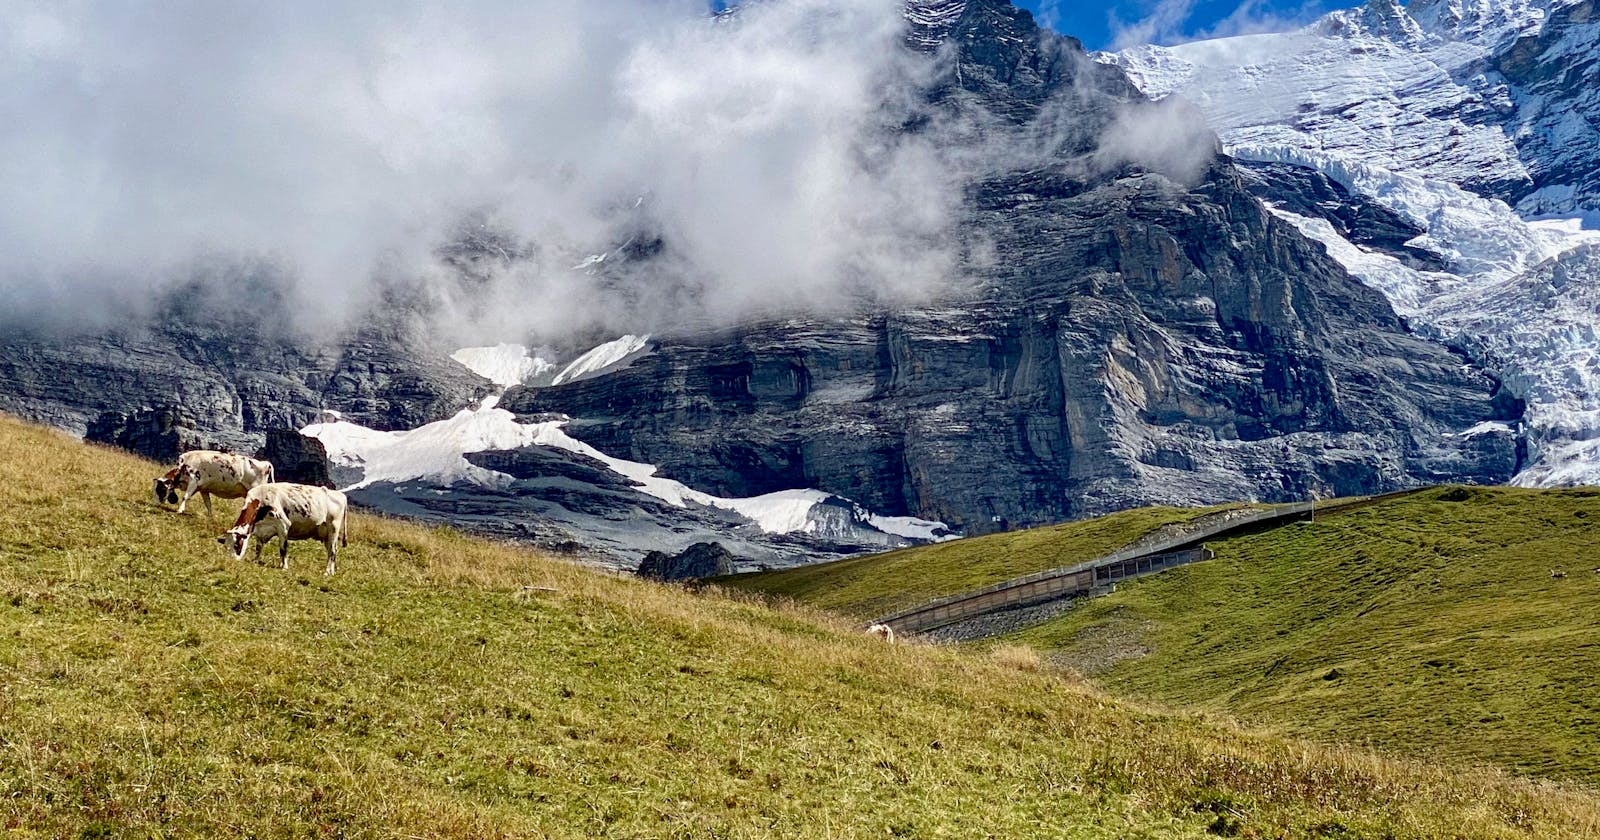 Awe-inspiring hiking in Switzerland